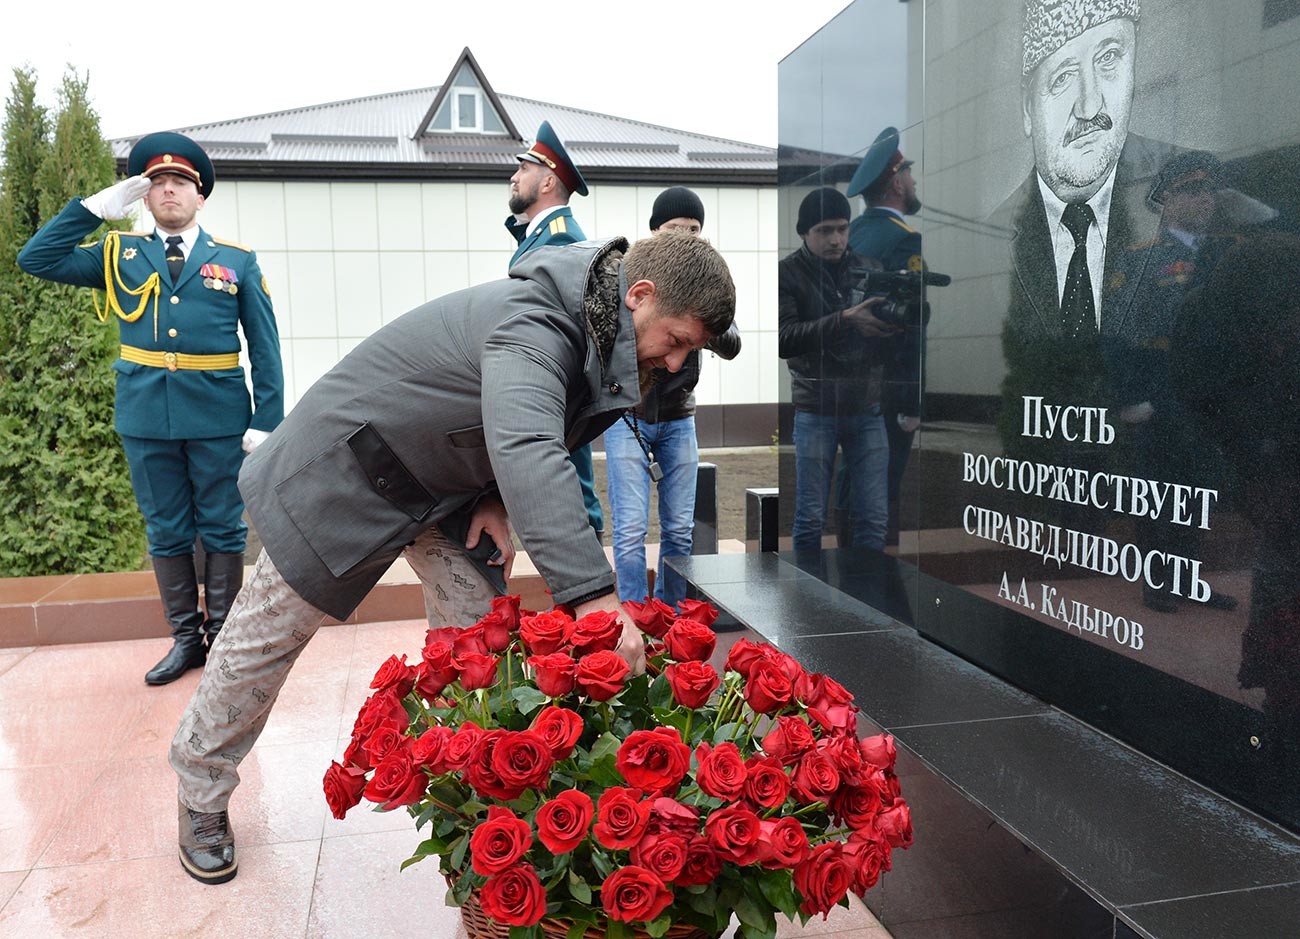 なぜロシア人は記念碑に生花を捧げるのか ロシア ビヨンド